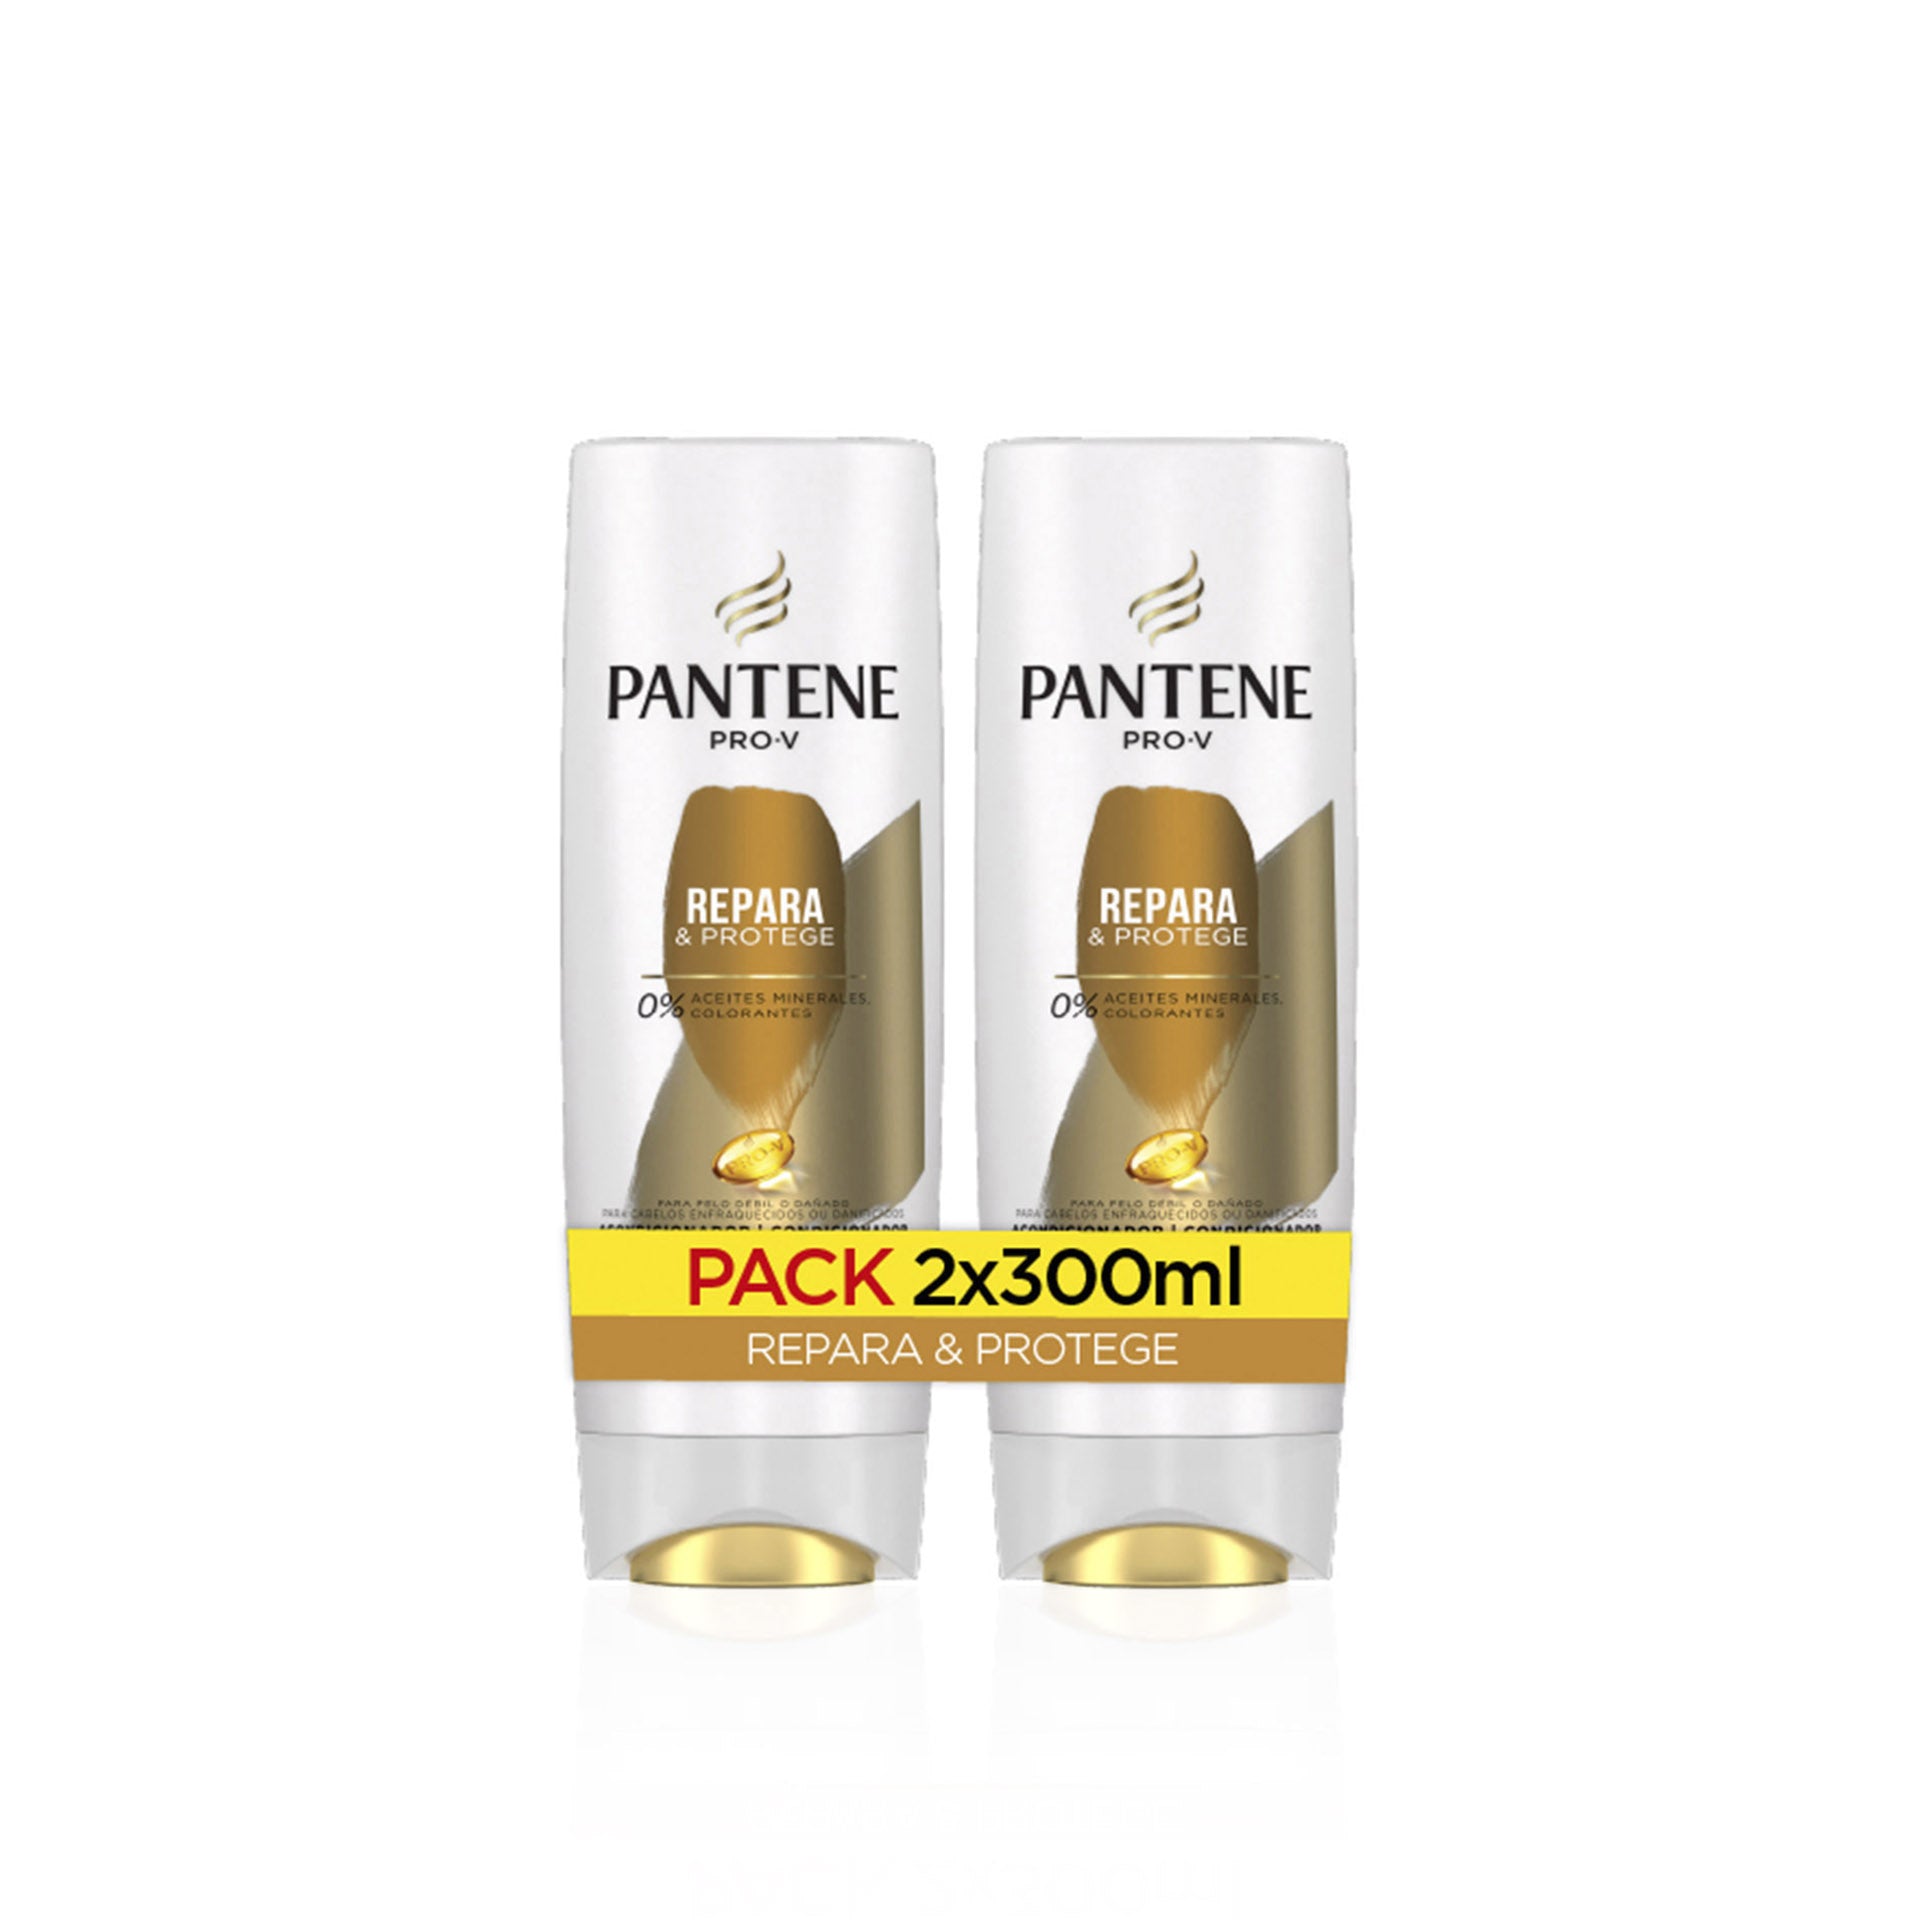 Pantene Condicionador Repara & Protege 300 ml - Pack 2 x 300 ml